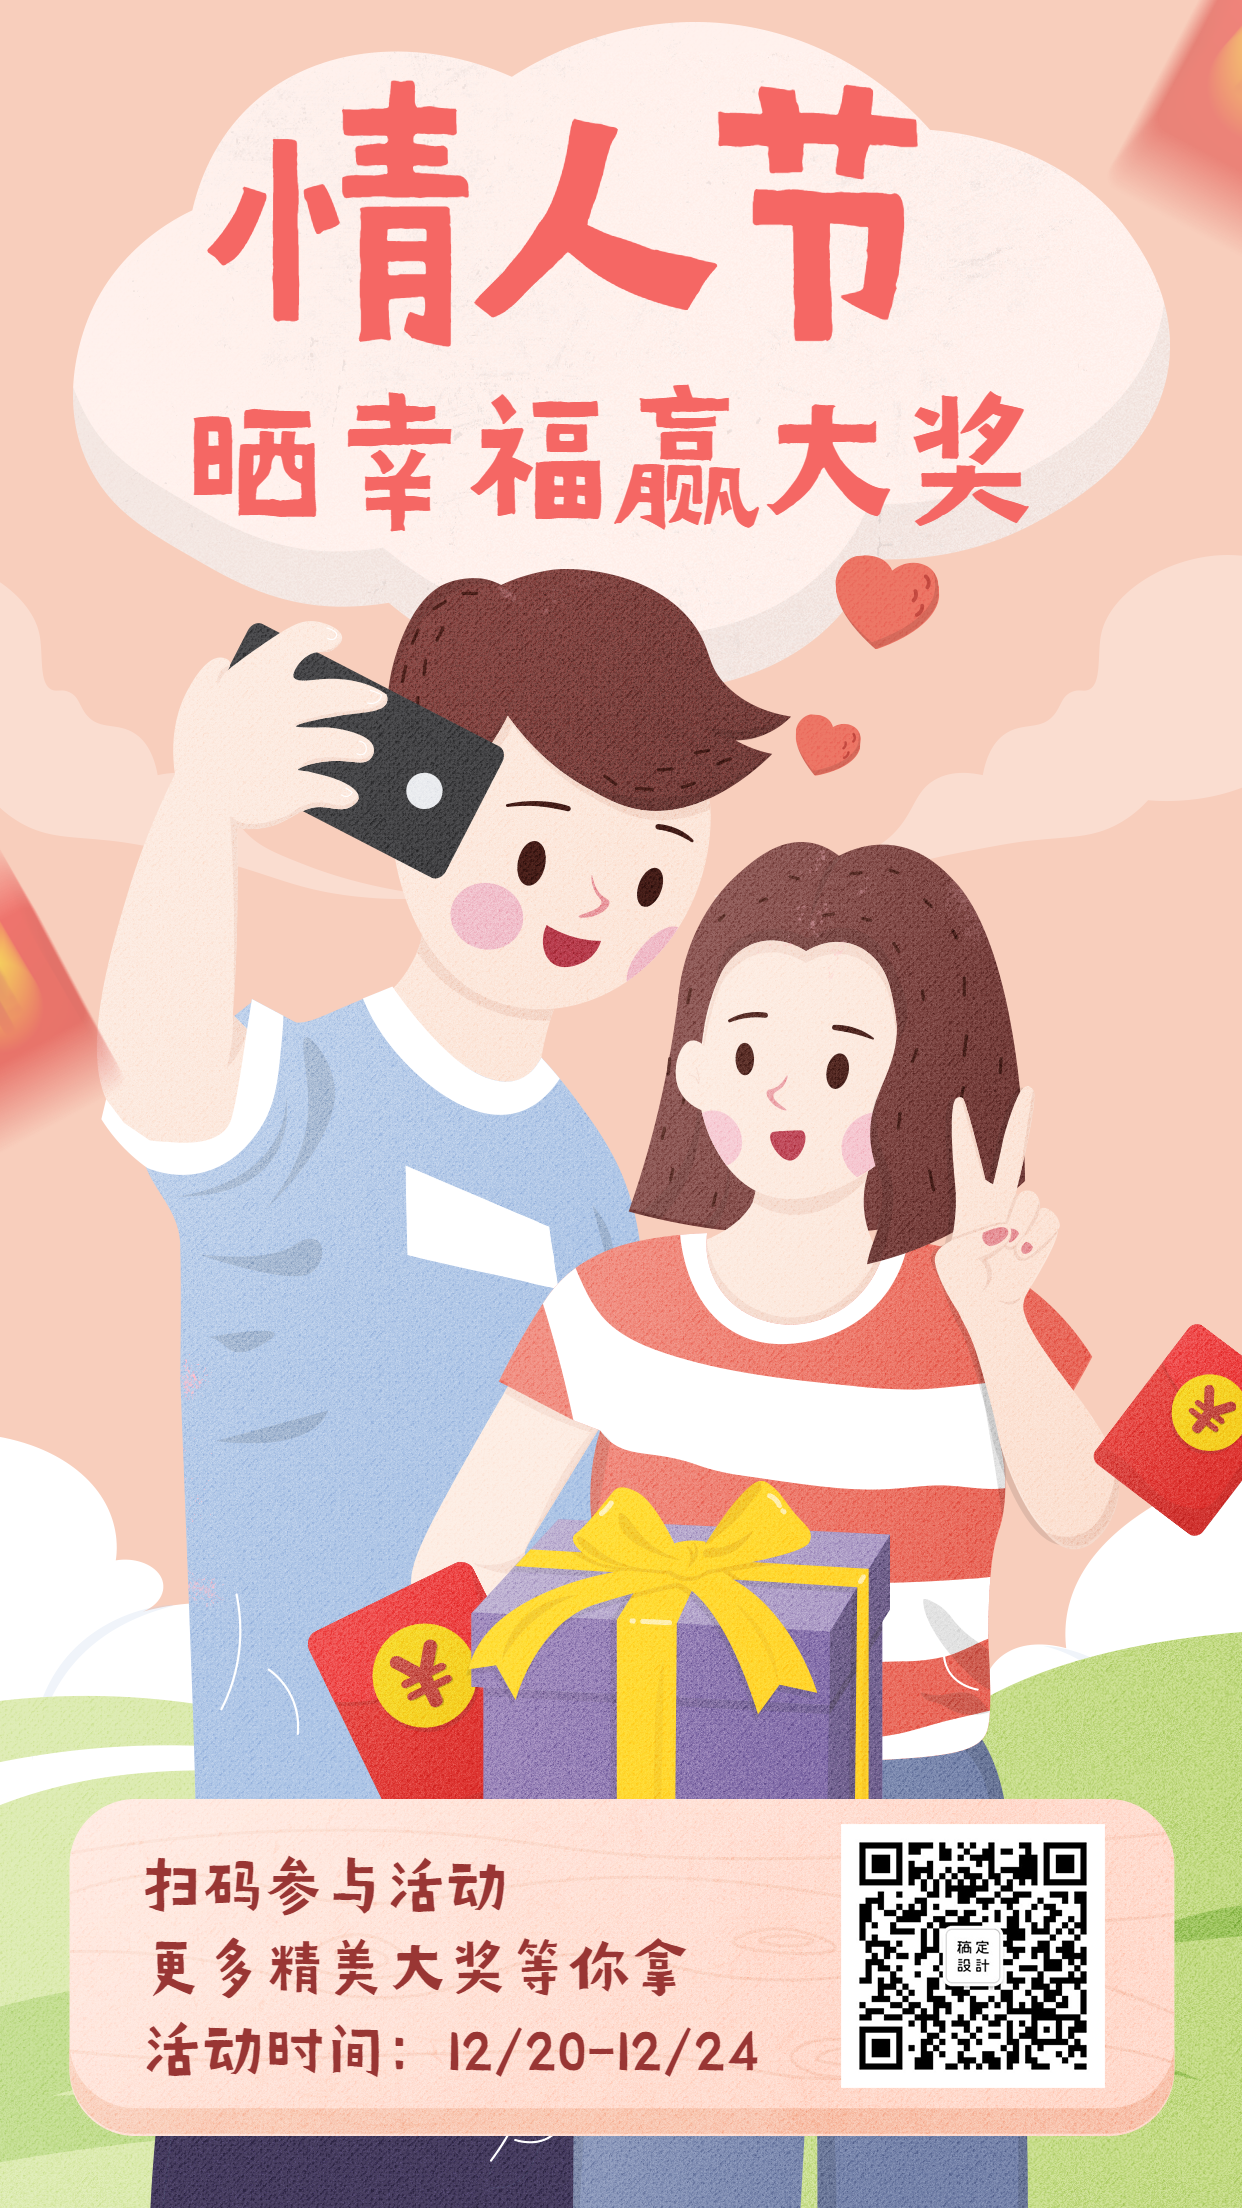 情人节秀恩爱活动推广手绘插画手机海报预览效果